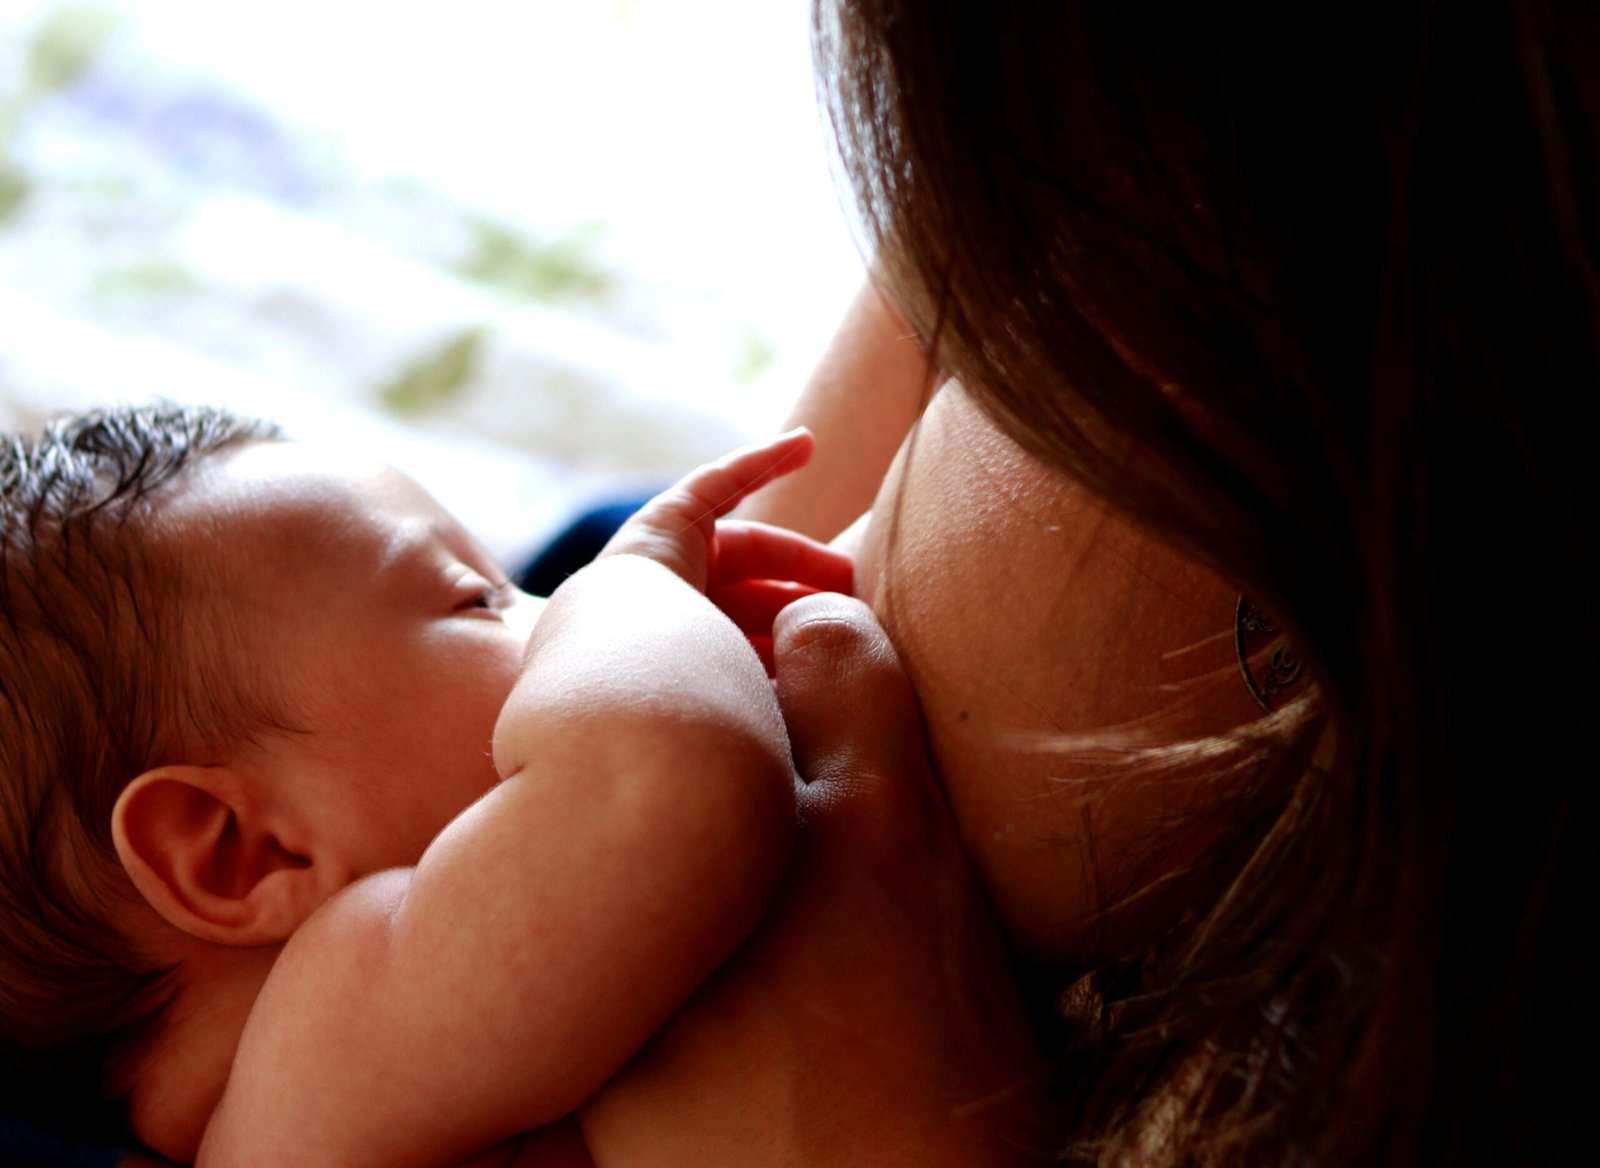 luiza braun hdmGreHJPZ8 unsplash 1 scaled - Doação de leite materno beneficiou quase 4500 bebês em AL desde 2020